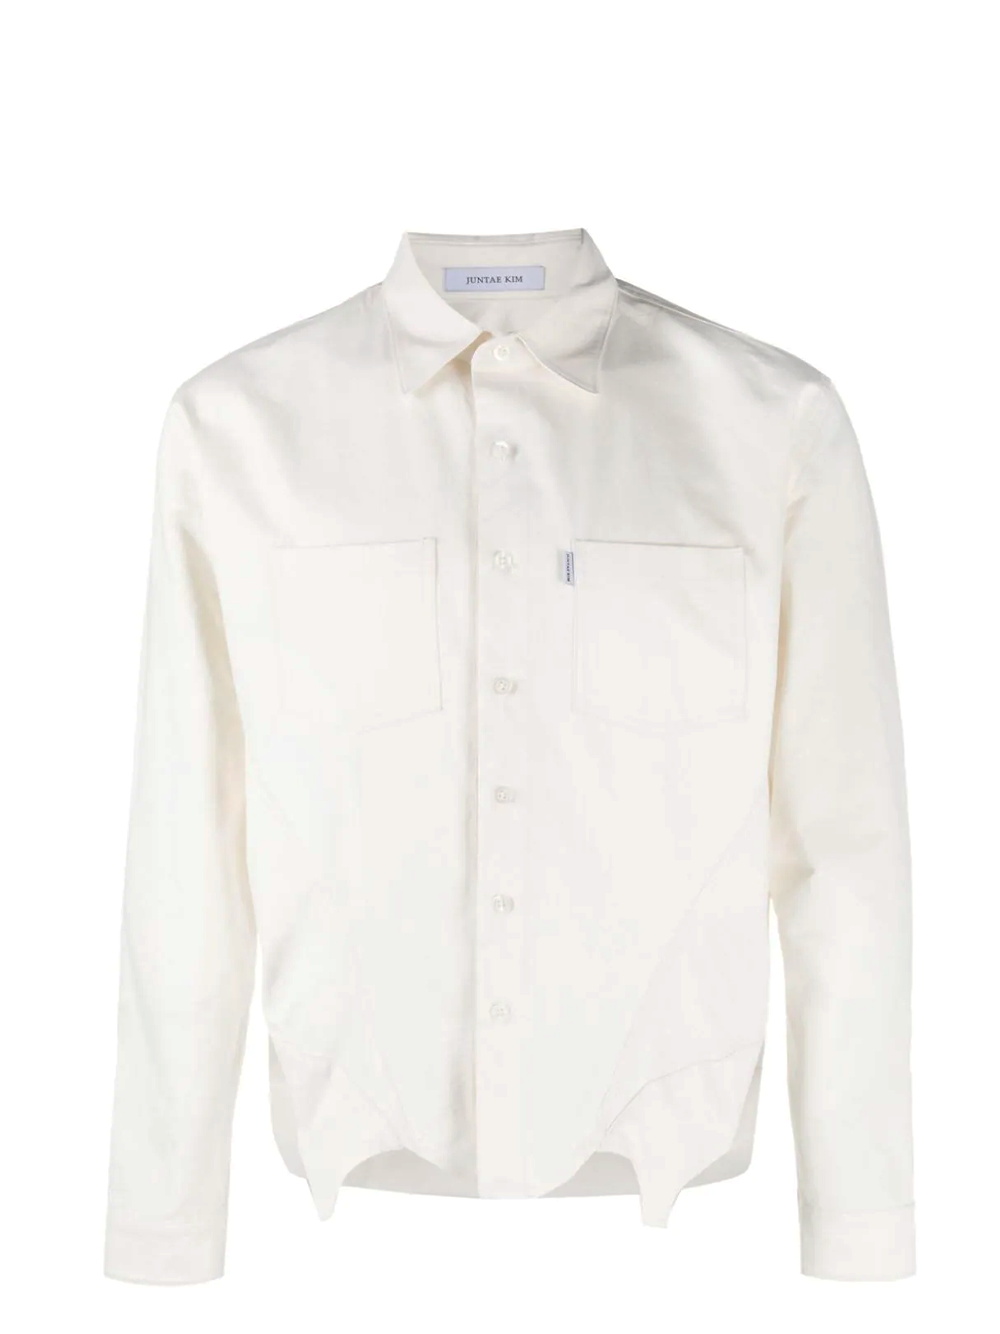 Juntae Kim Corset Shirts White 1